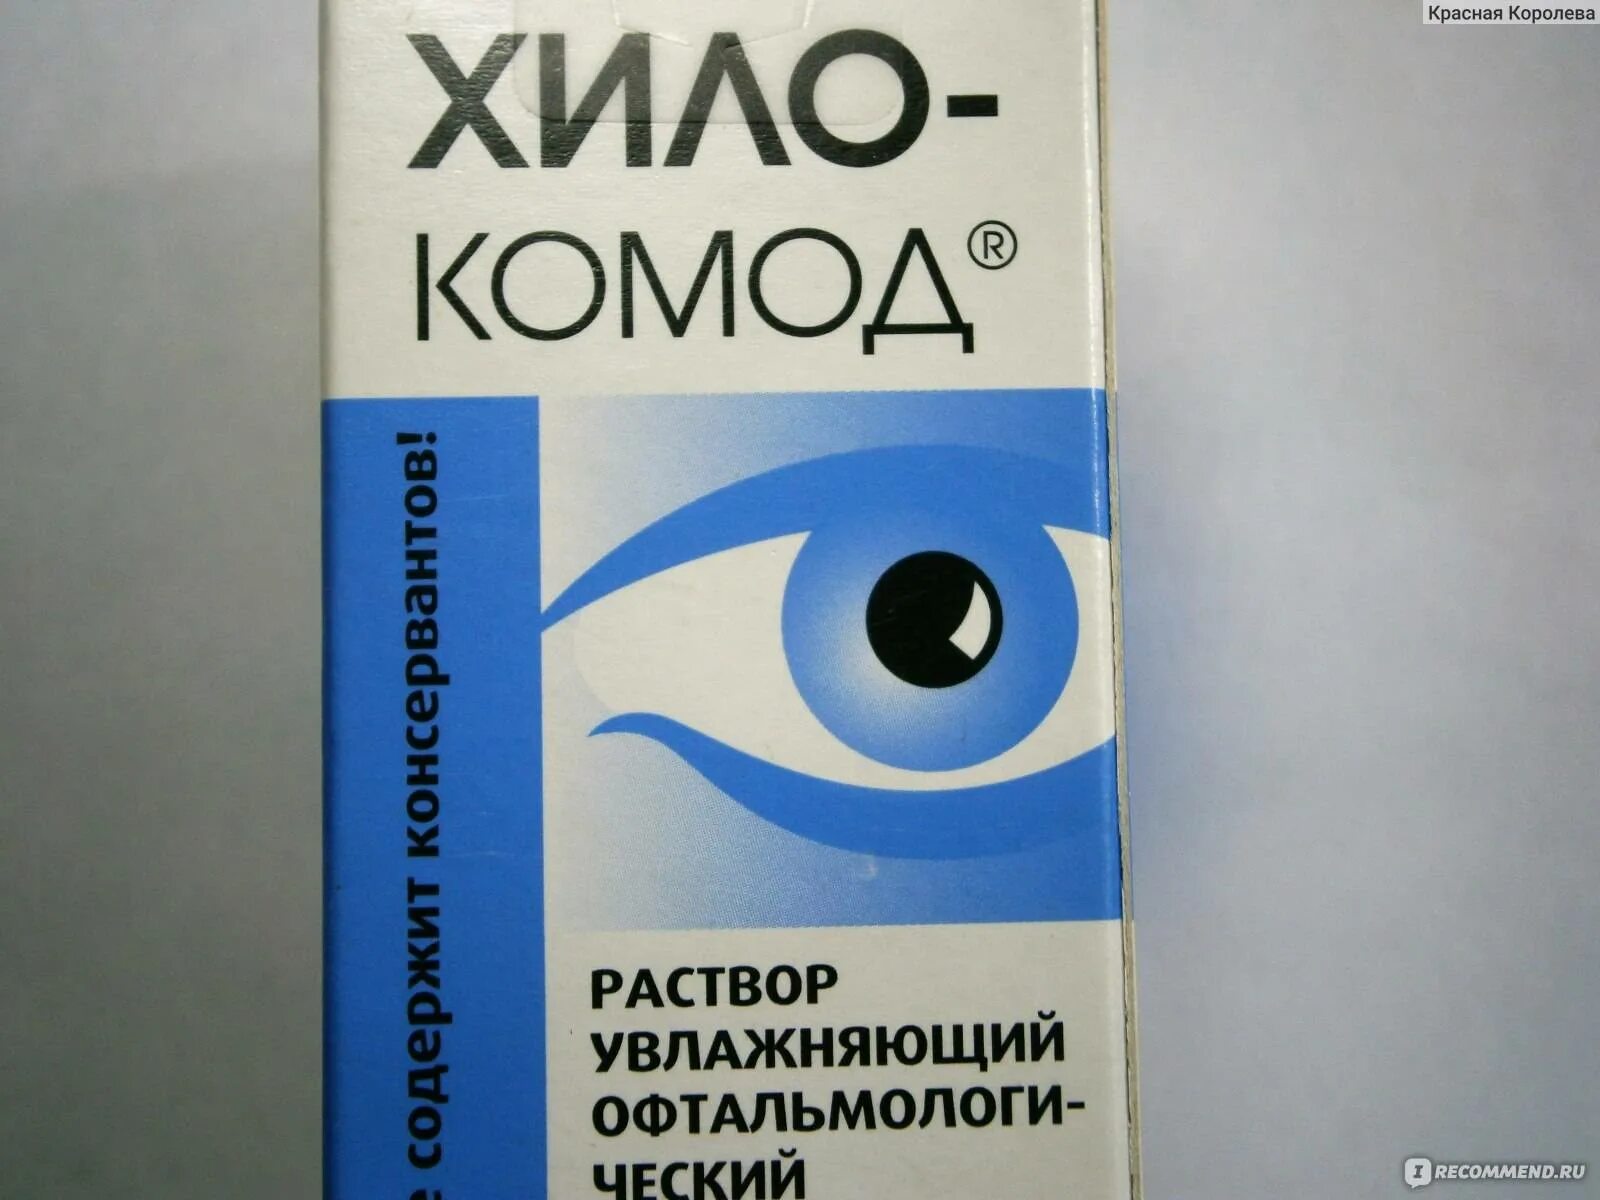 Хило комод глазные капли отзывы аналоги. Хилокомод глазные капли. Хило-комод раствор увлажняющий офтальмологический. Увлажняющие капли хило комод. Капли для глаз хило.